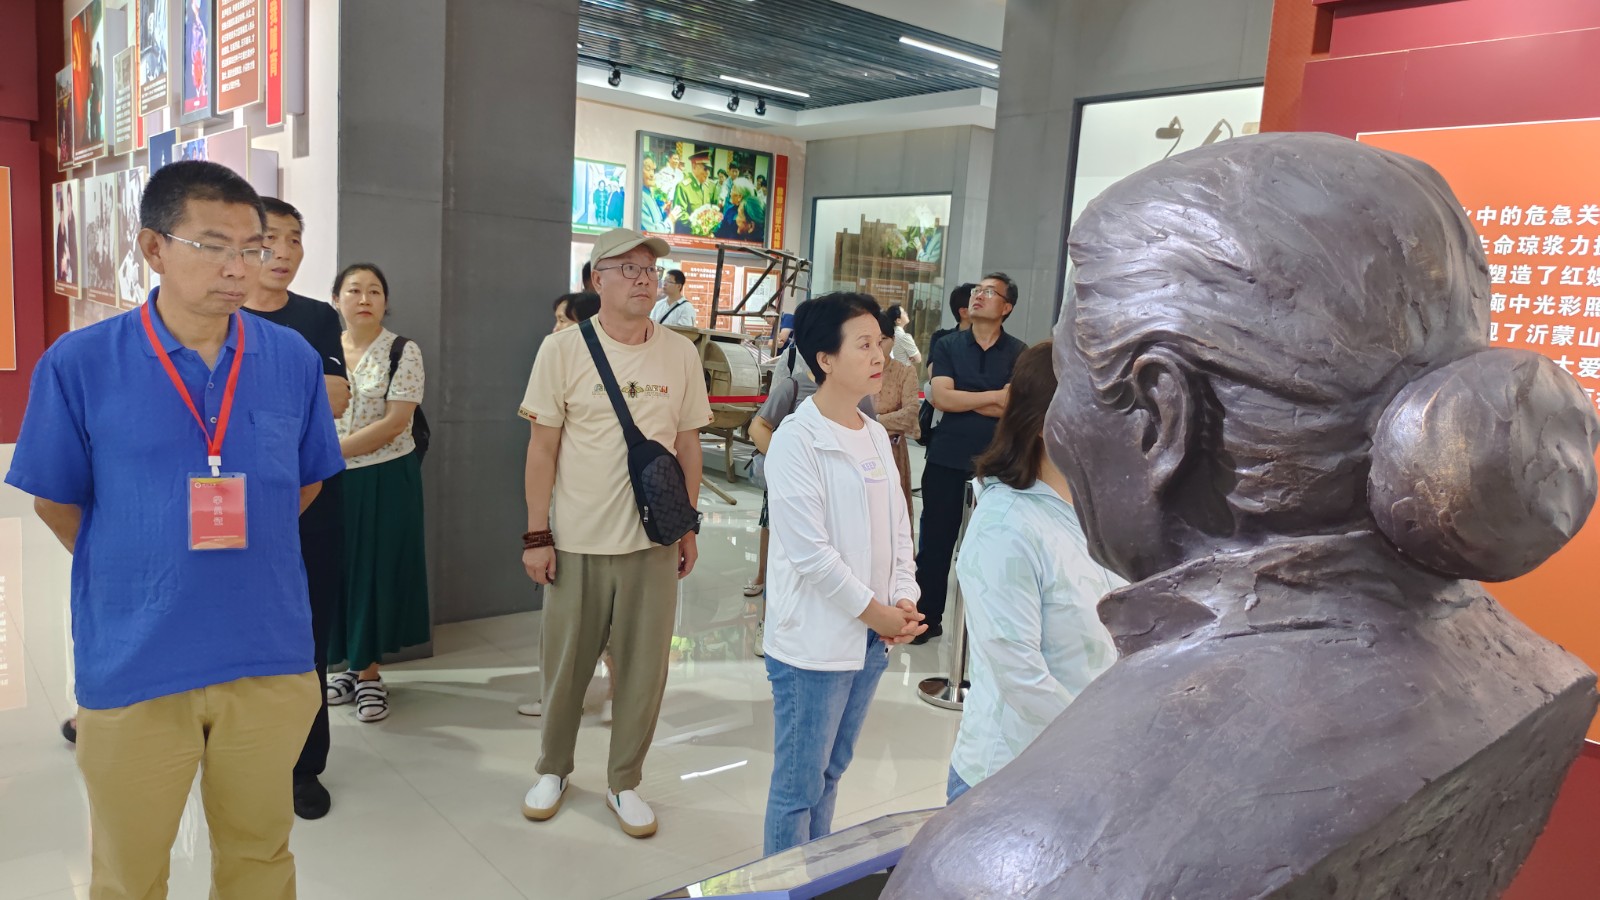 7月20日临沂大学到红嫂文化博物馆参观